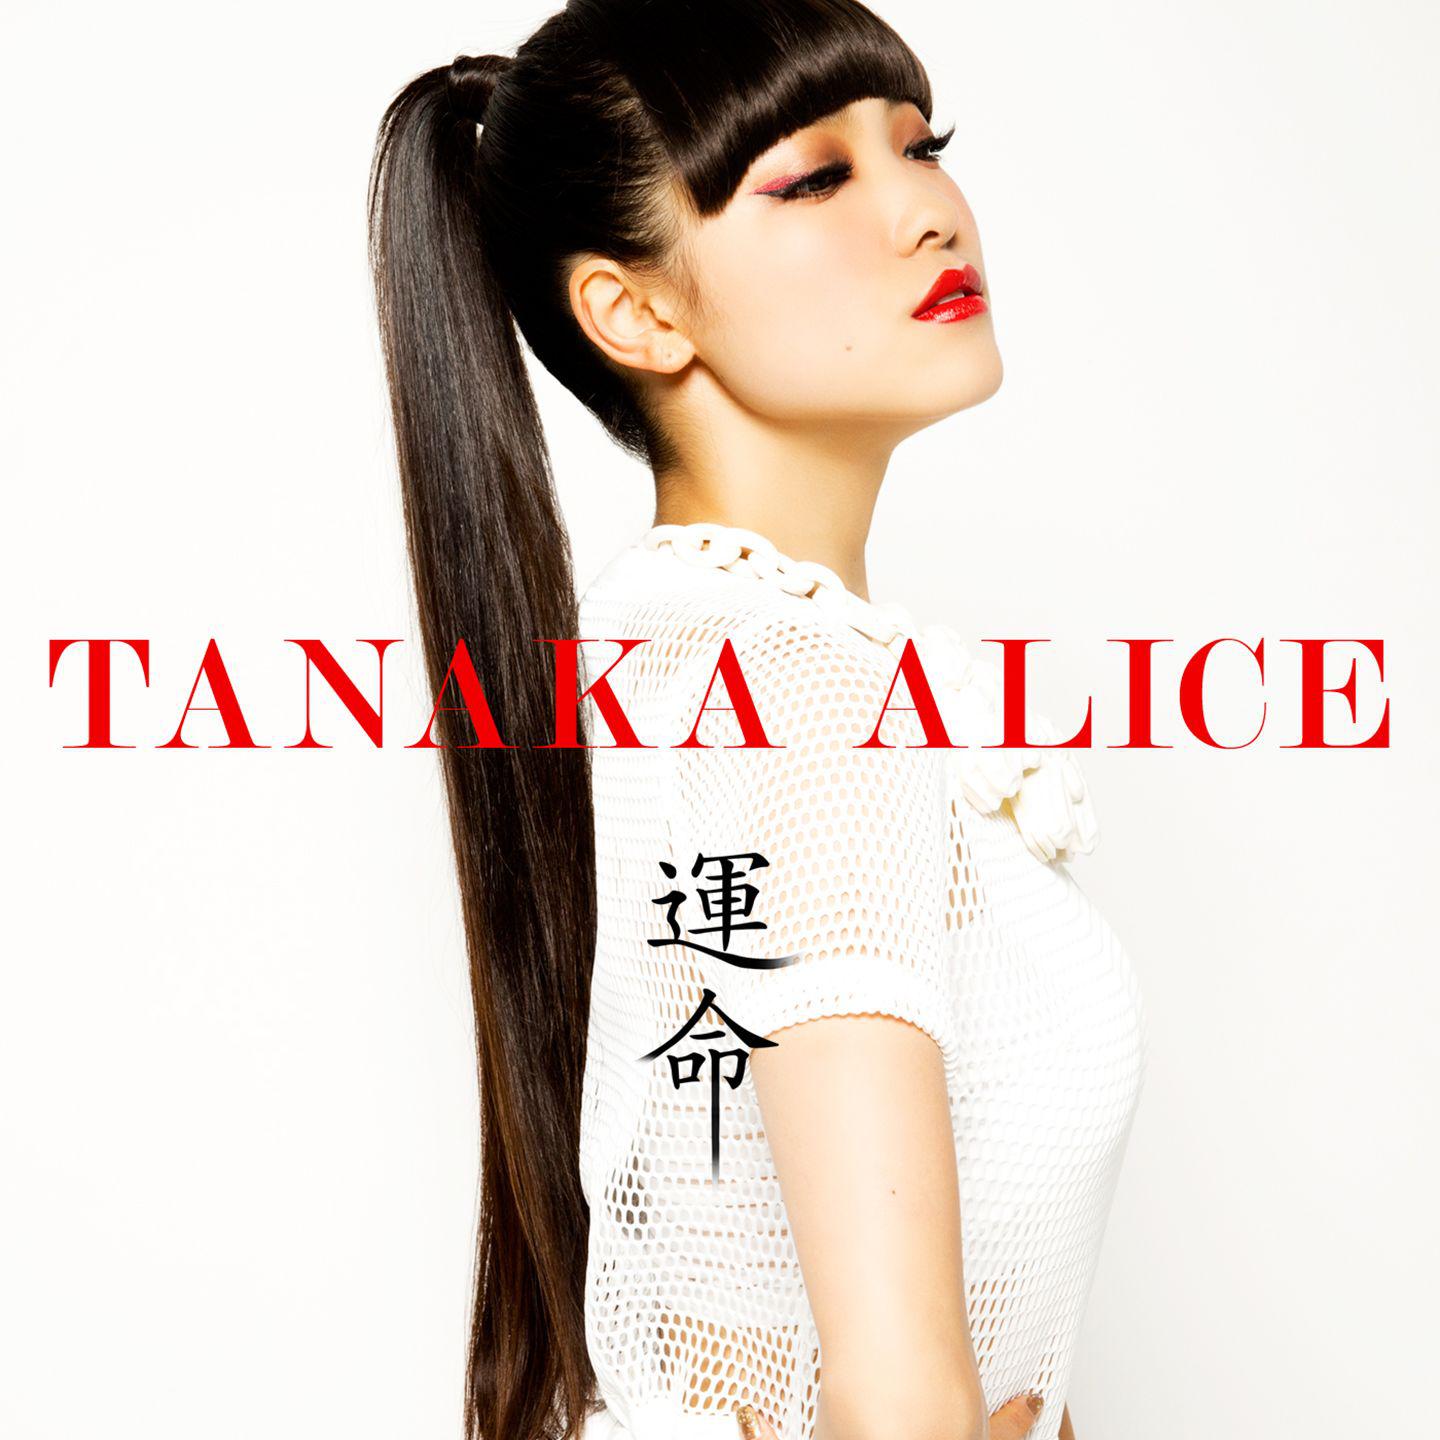 Tanaka Alice